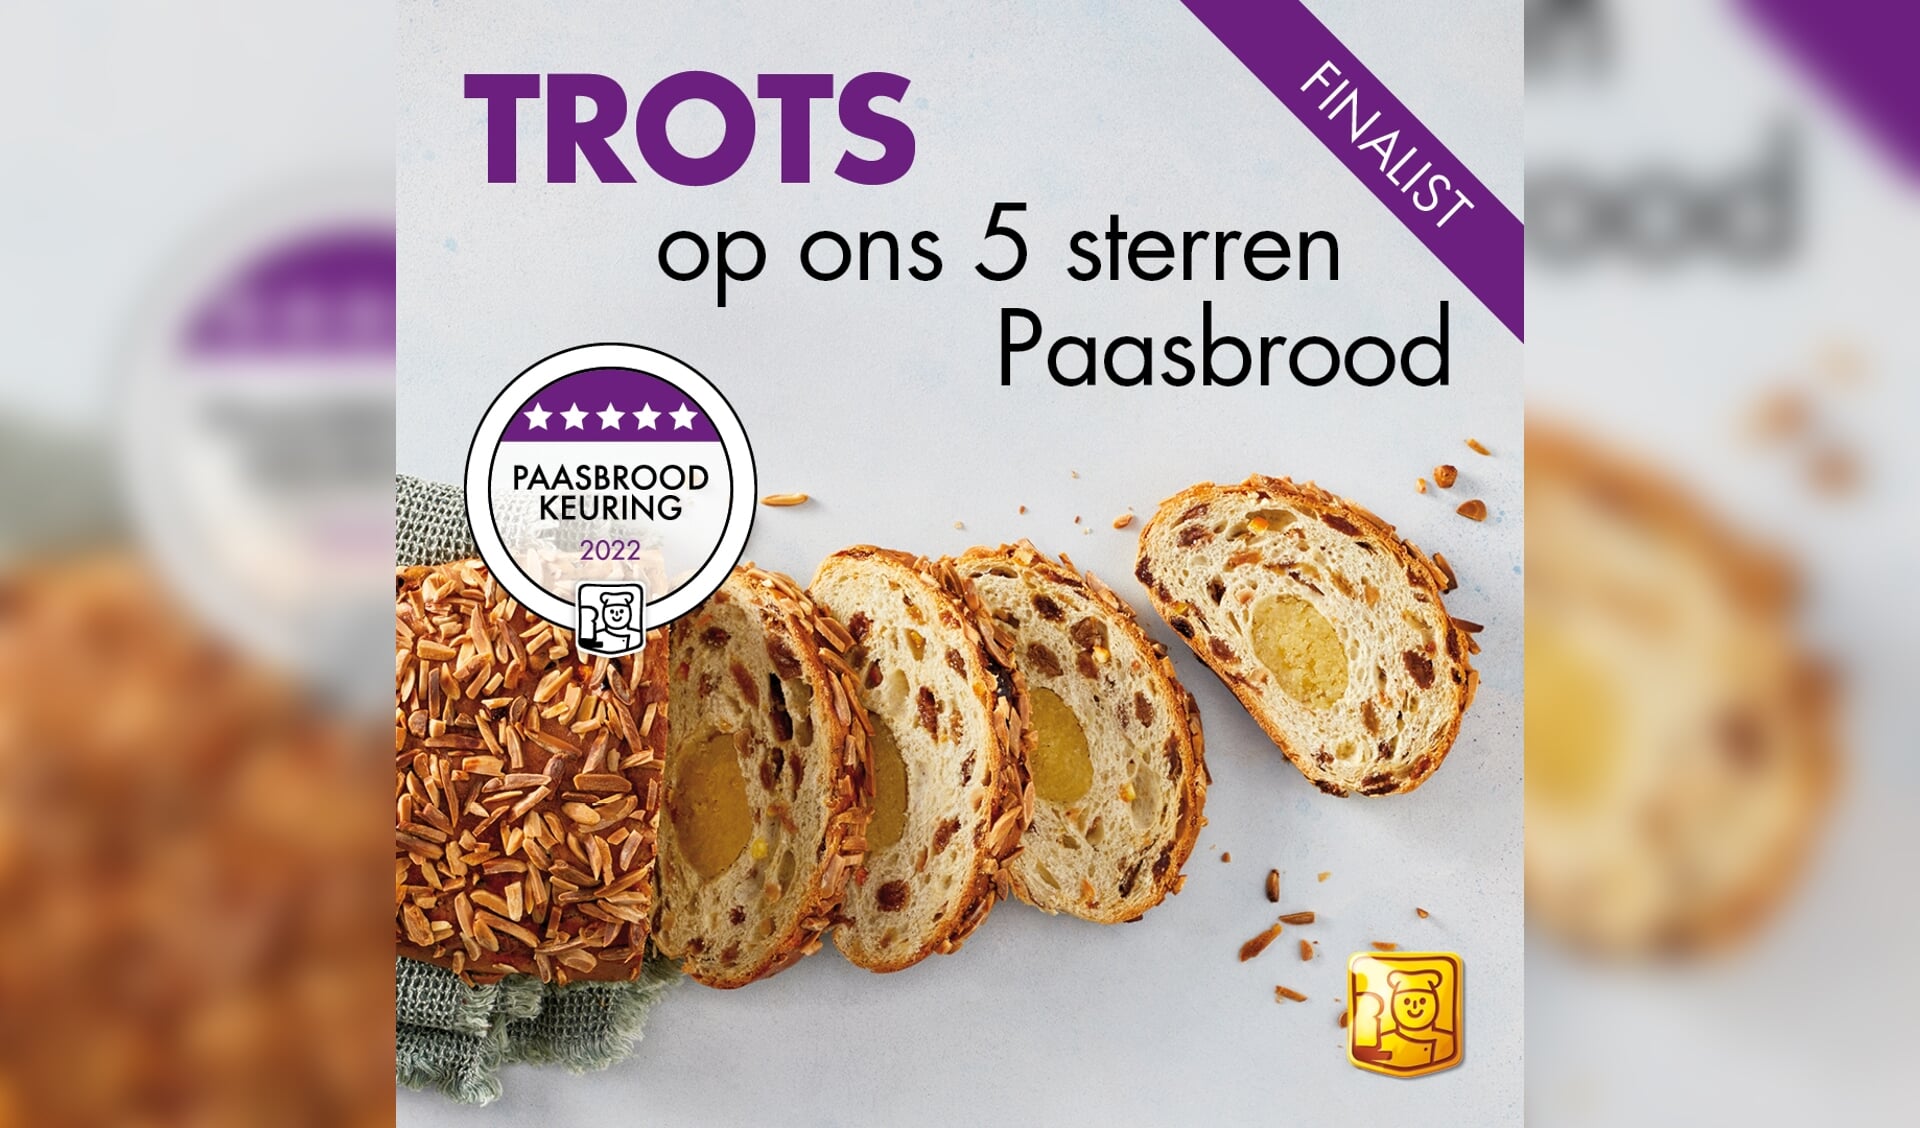 Paasbrood van Van Mook, De Echte Bakker.